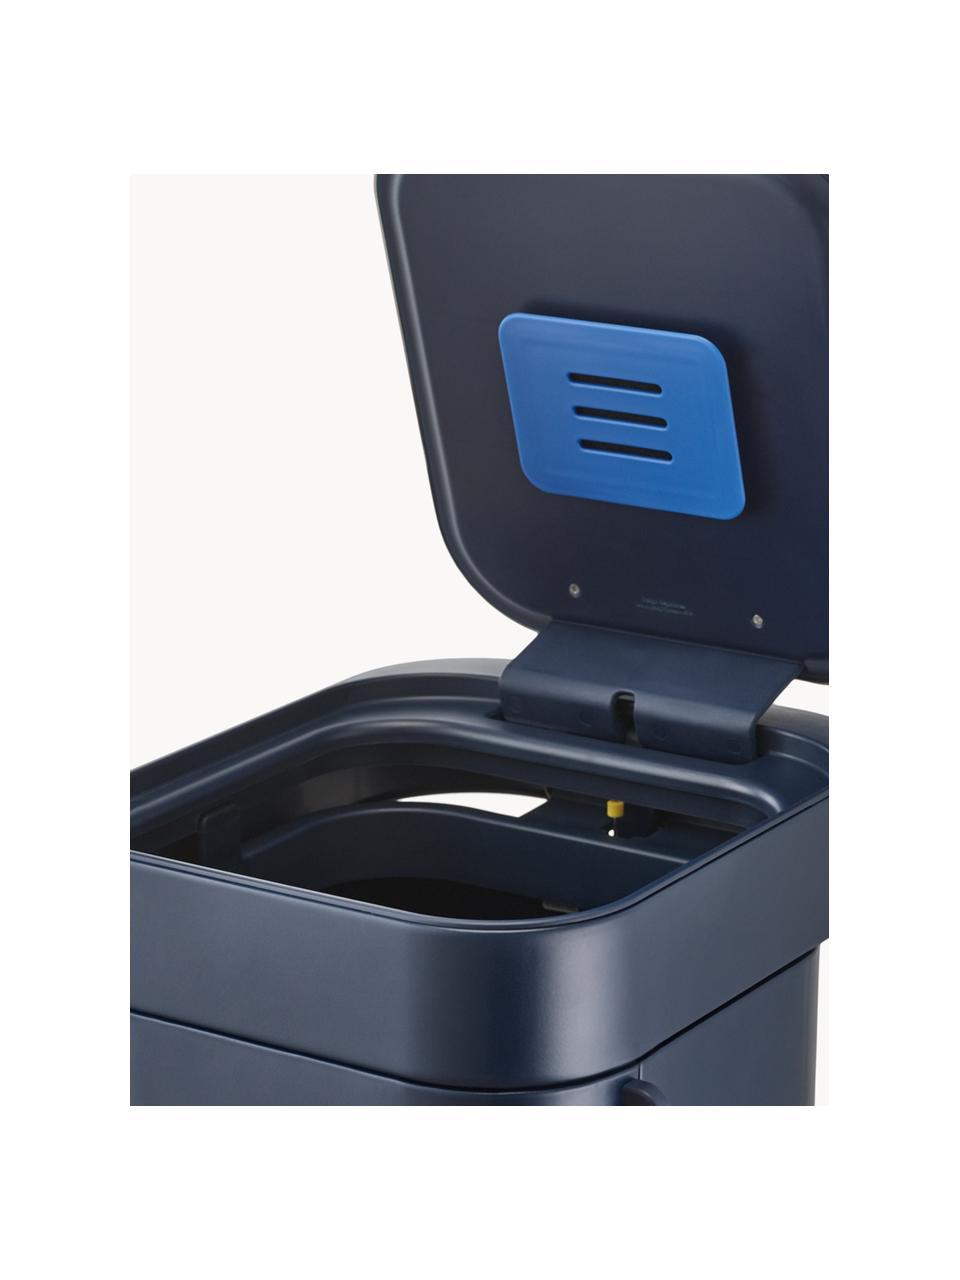 Kosz na śmieci z technologią Airflow Porta, 40 l, Ciemny niebieski, S 28 x W 68 cm